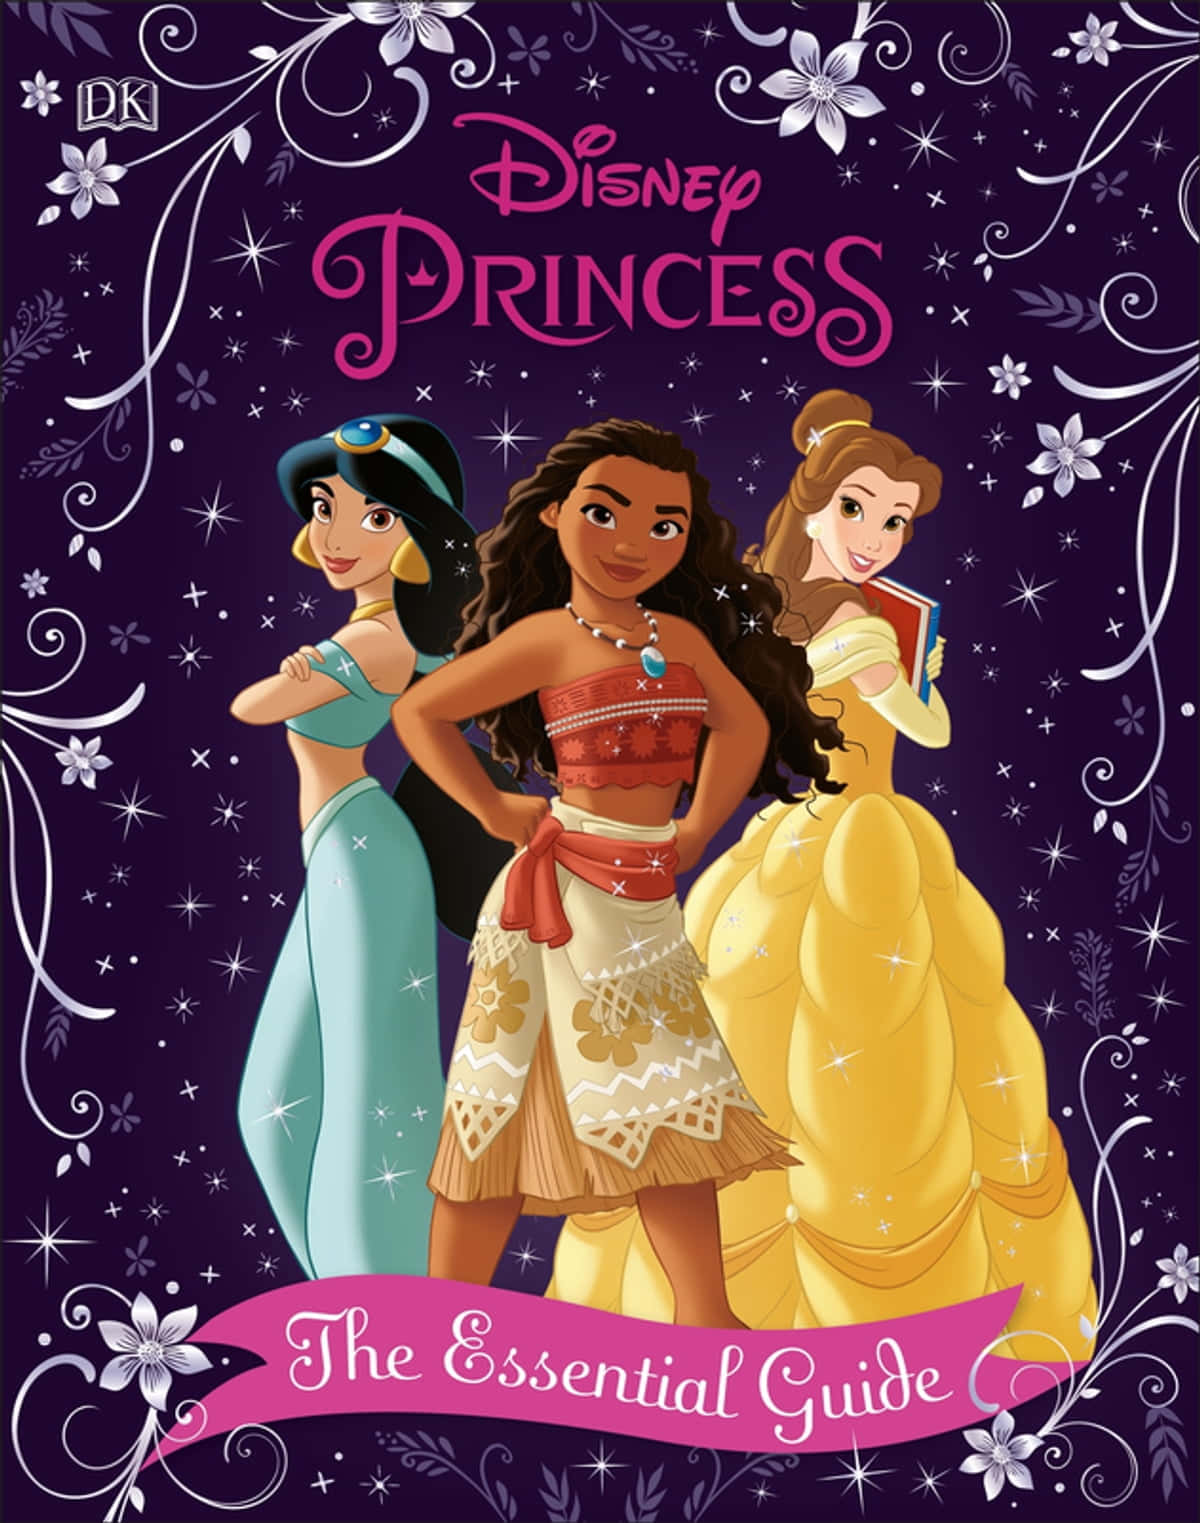 Billeder af Disney Prinsesser til dine enheder!